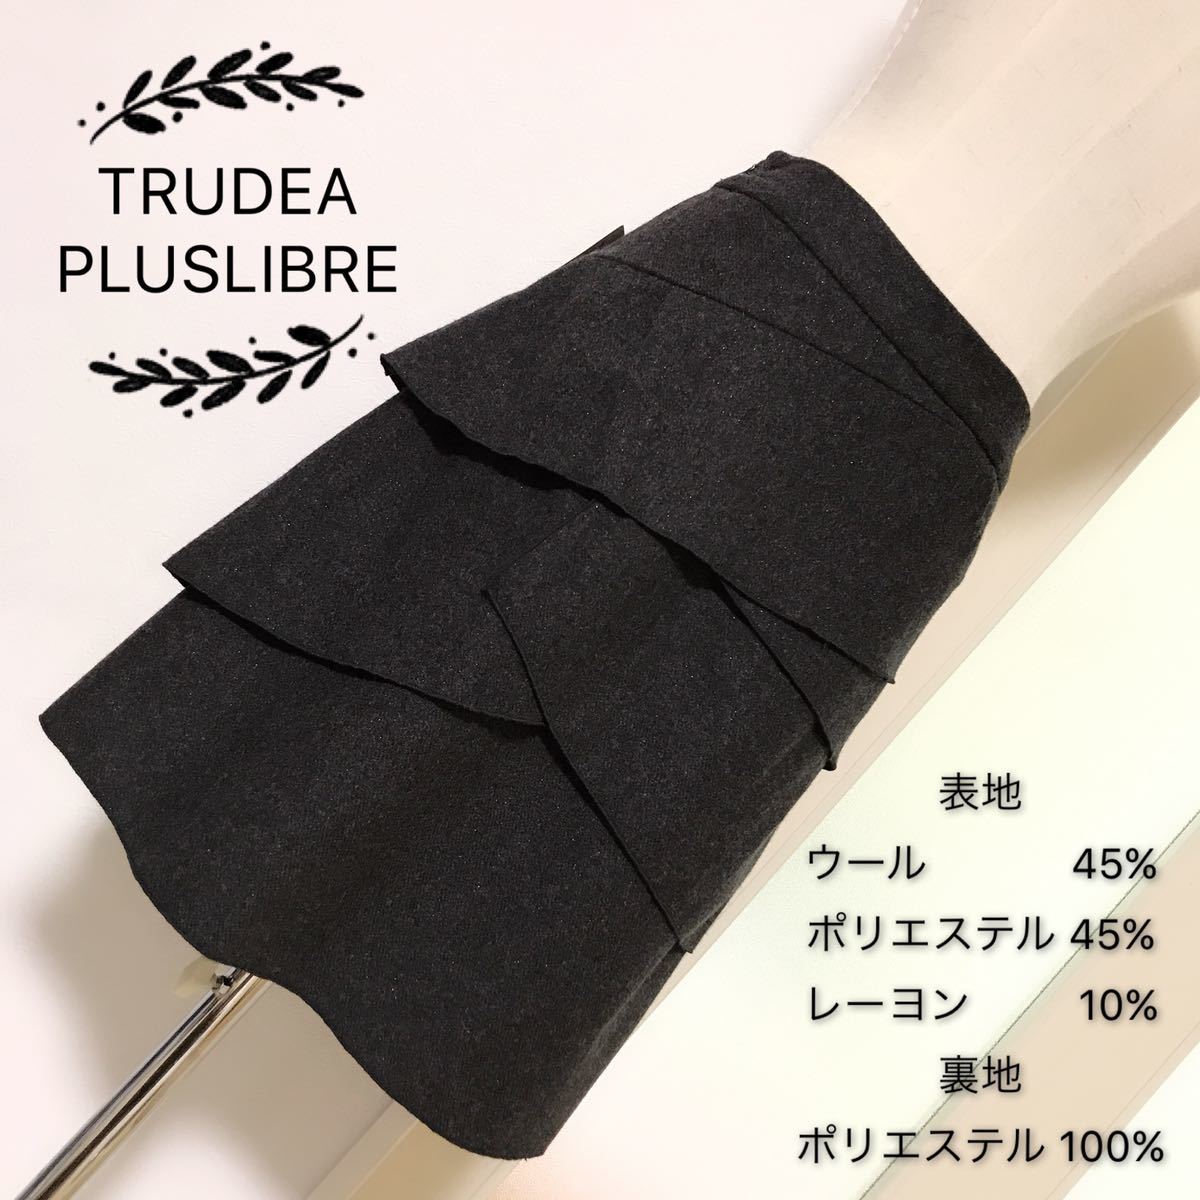 TRUDEA (PLUSLIBRE) ウール素材混 スカート